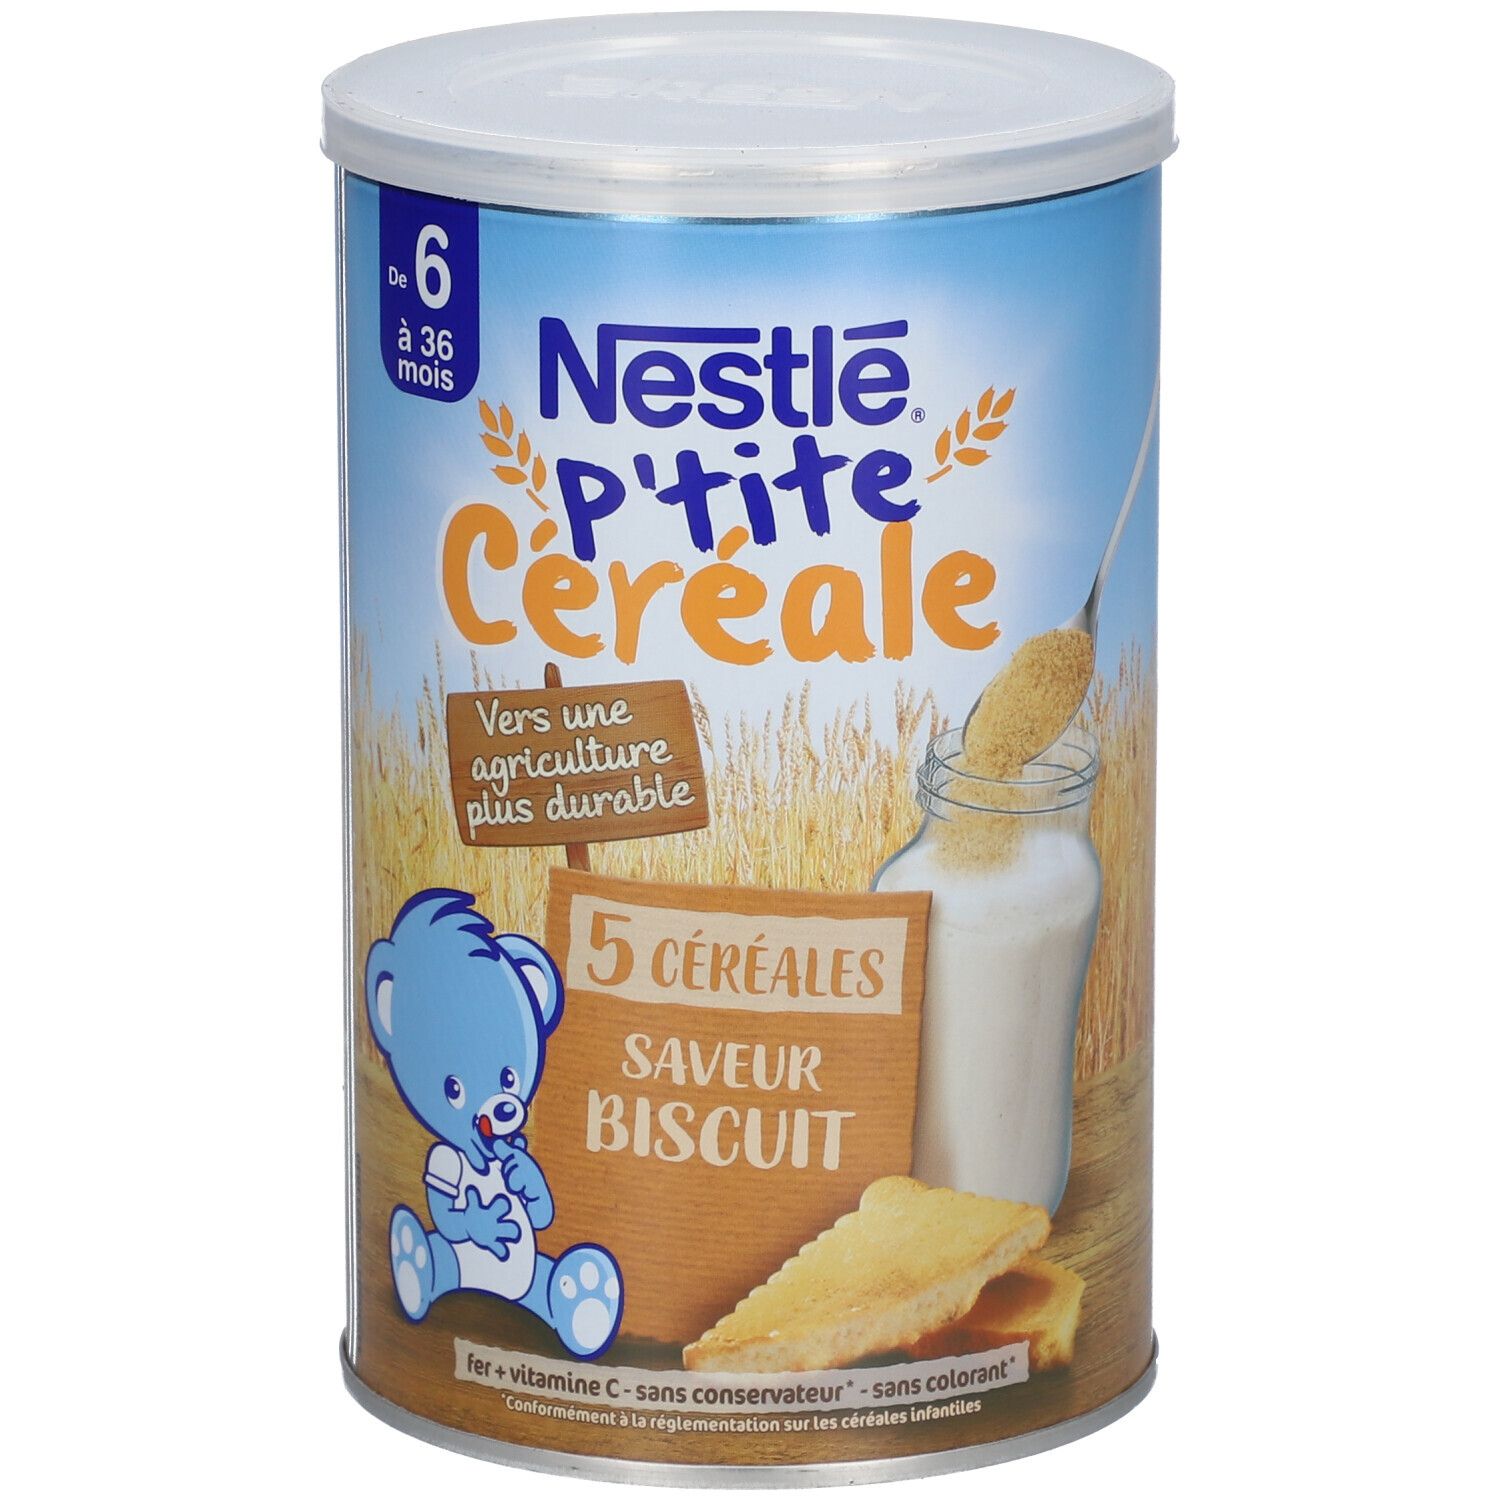 Nestlé® P'tite Céréale 5 Céréales Saveur Biscuit